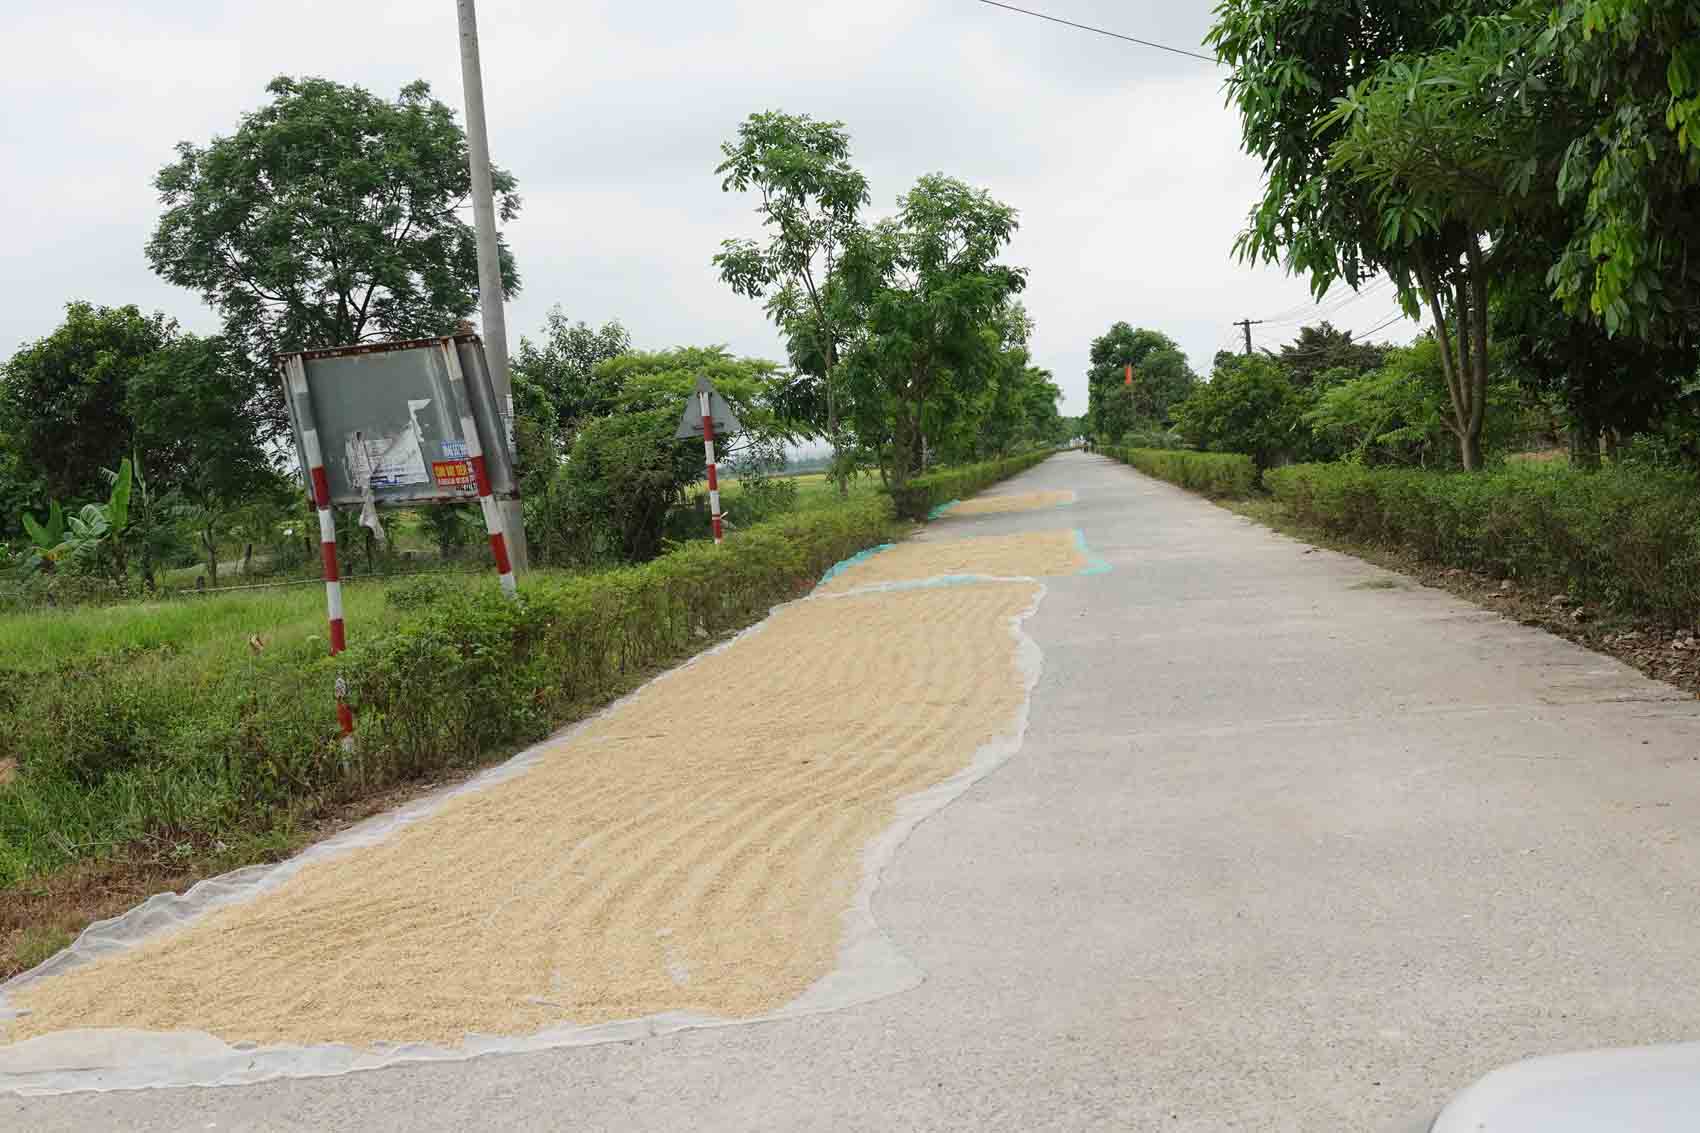 Hình ảnh lúa phơi trên đường ở Hà Tĩnh rất dễ bắt gặp ở nhiều nơi khi nông dân đang vào vụ thu hoạch. Ảnh: Trần Tuấn.